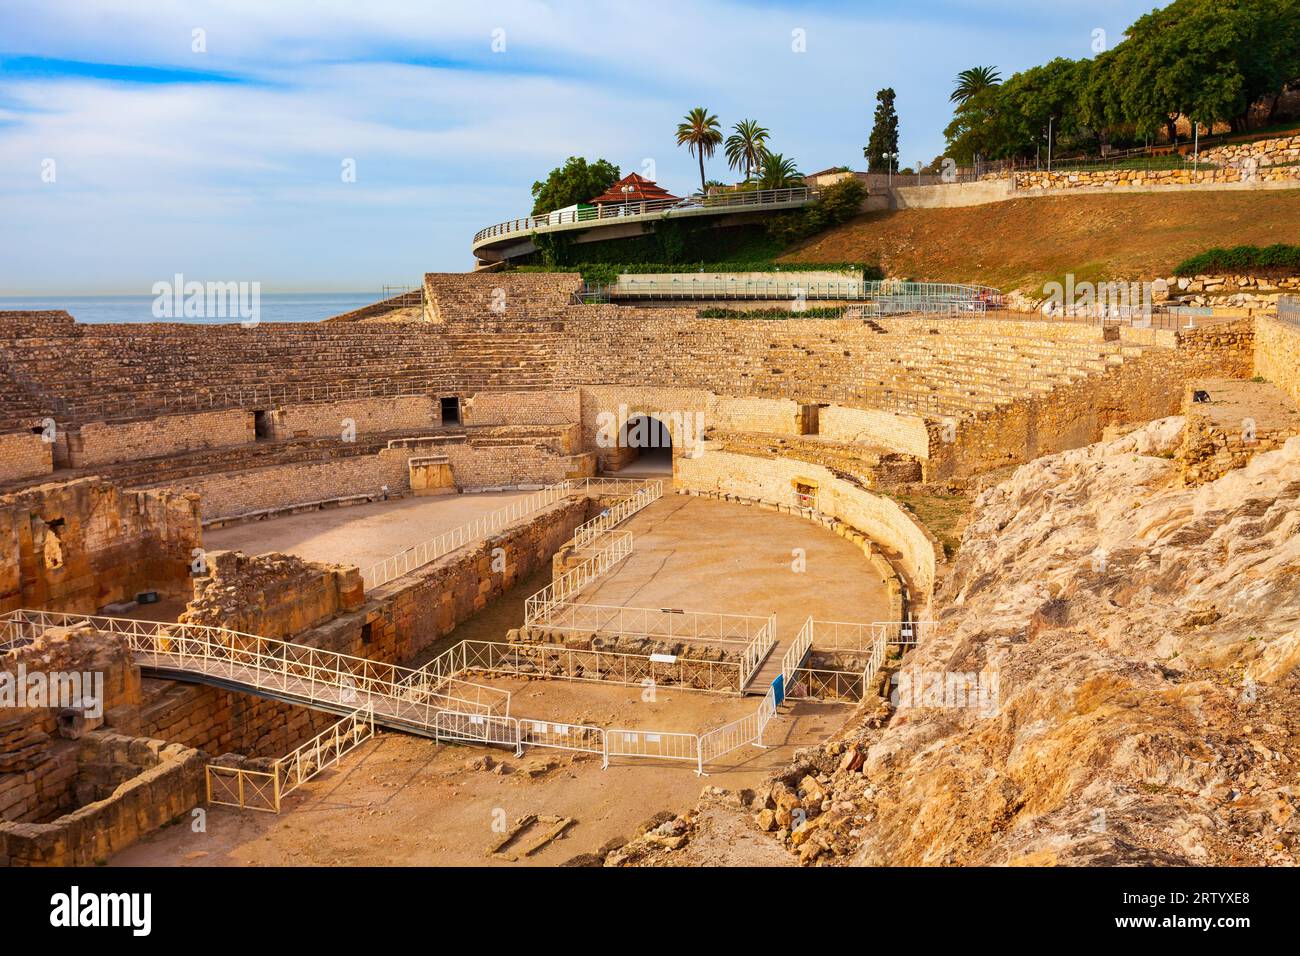 L'Amphithéâtre de Tarragone est un amphithéâtre romain situé dans la ville de Tarragone, en Catalogne, en Espagne. Banque D'Images